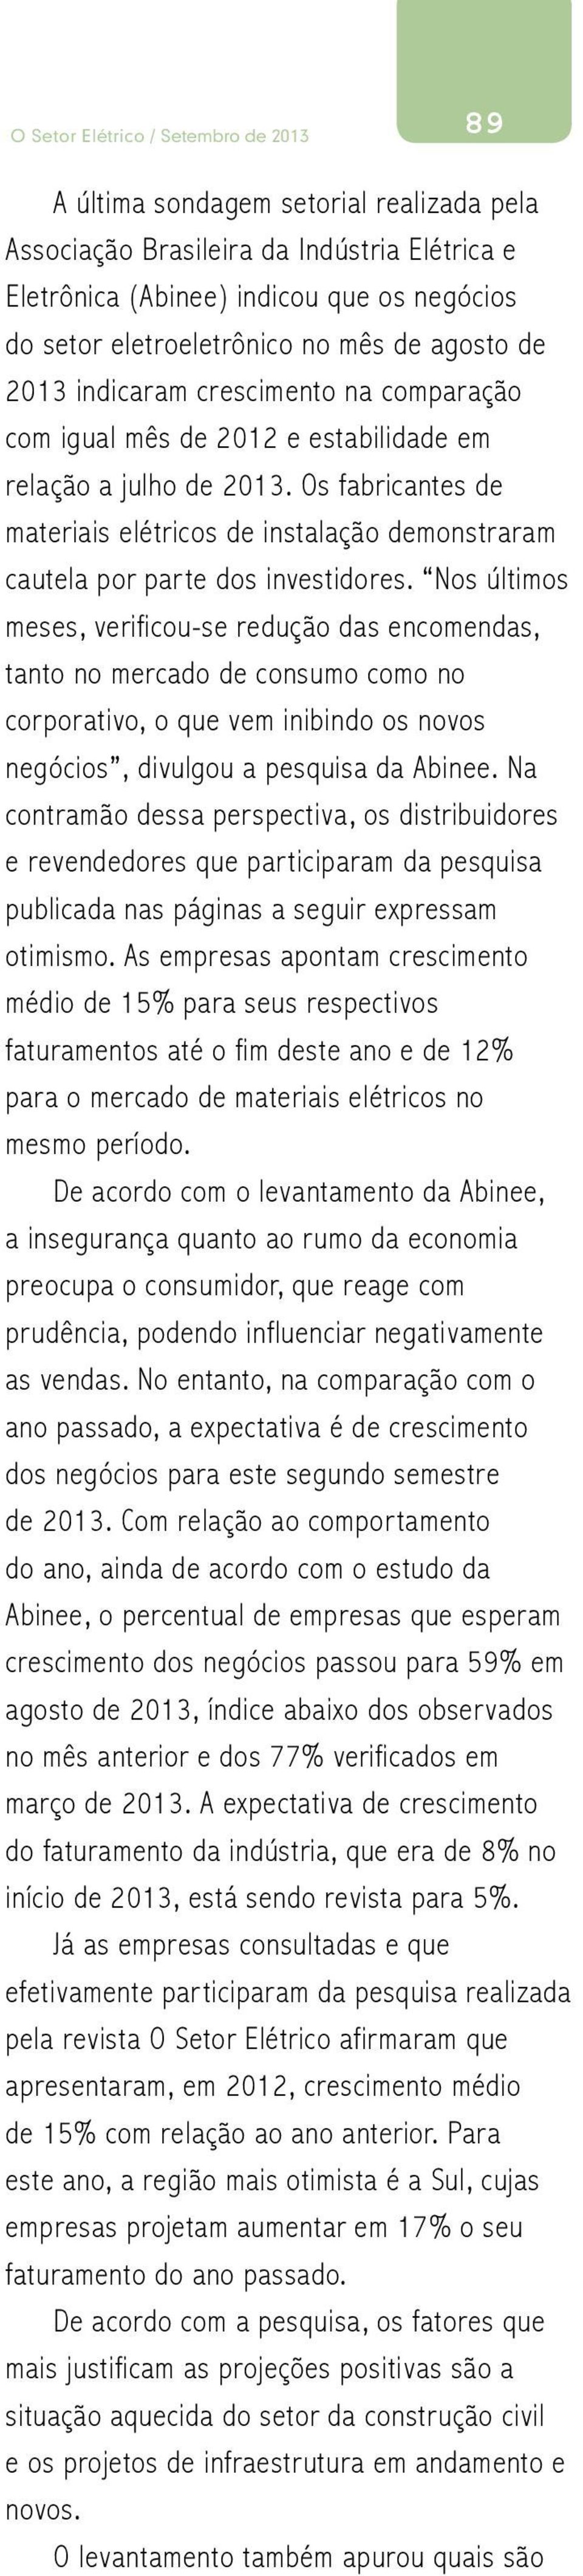 Nos últimos meses, verificou-se redução das encomendas, tanto no mercado de consumo como no corporativo, o que vem inibindo os novos negócios, divulgou a pesquisa da Abinee.